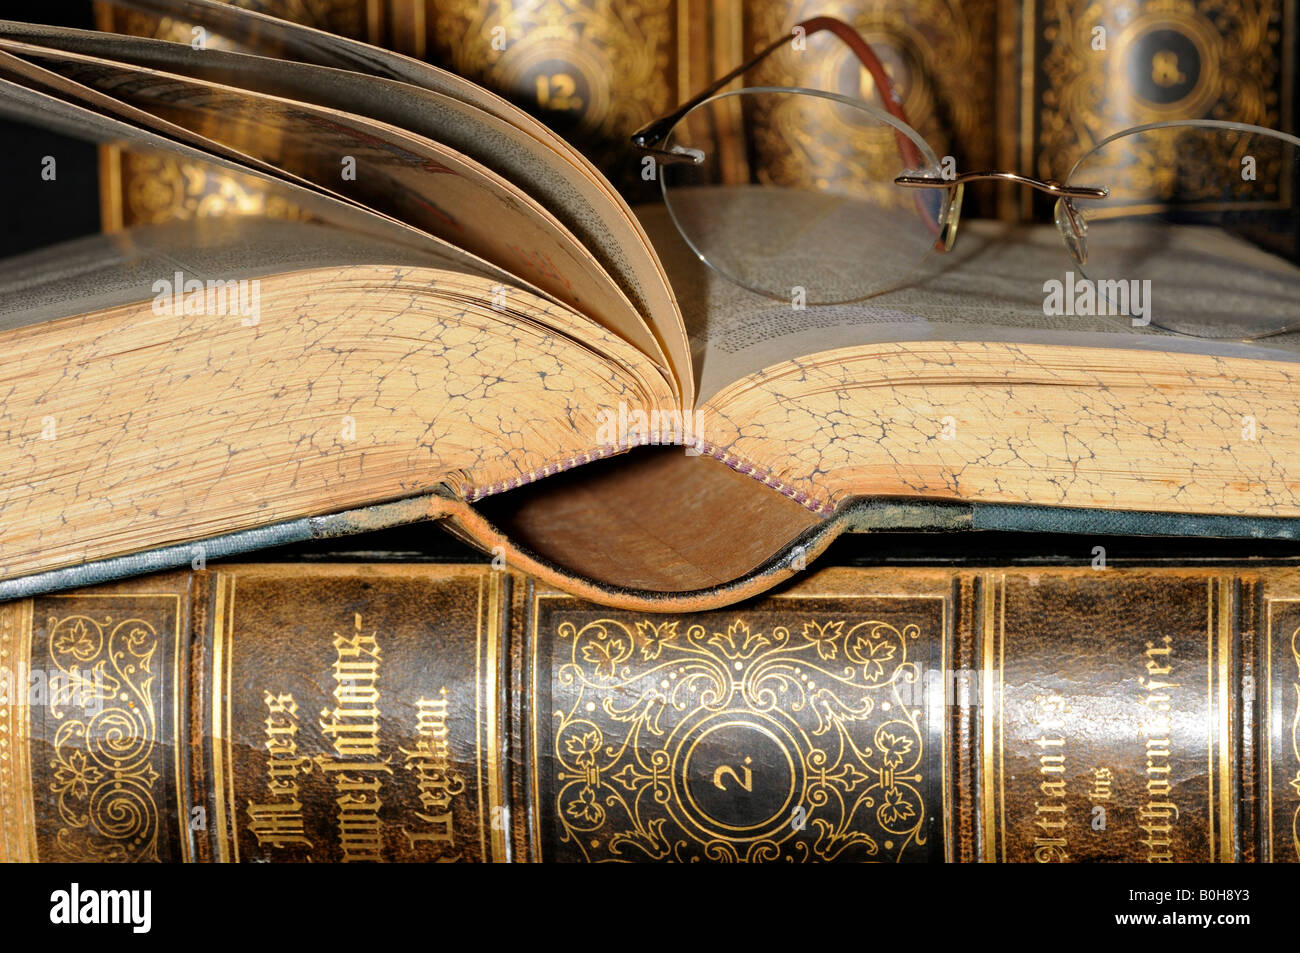 Gli occhiali da lettura in appoggio su una pagina aperta di una vecchia enciclopedia, pelle libri rilegati Foto Stock